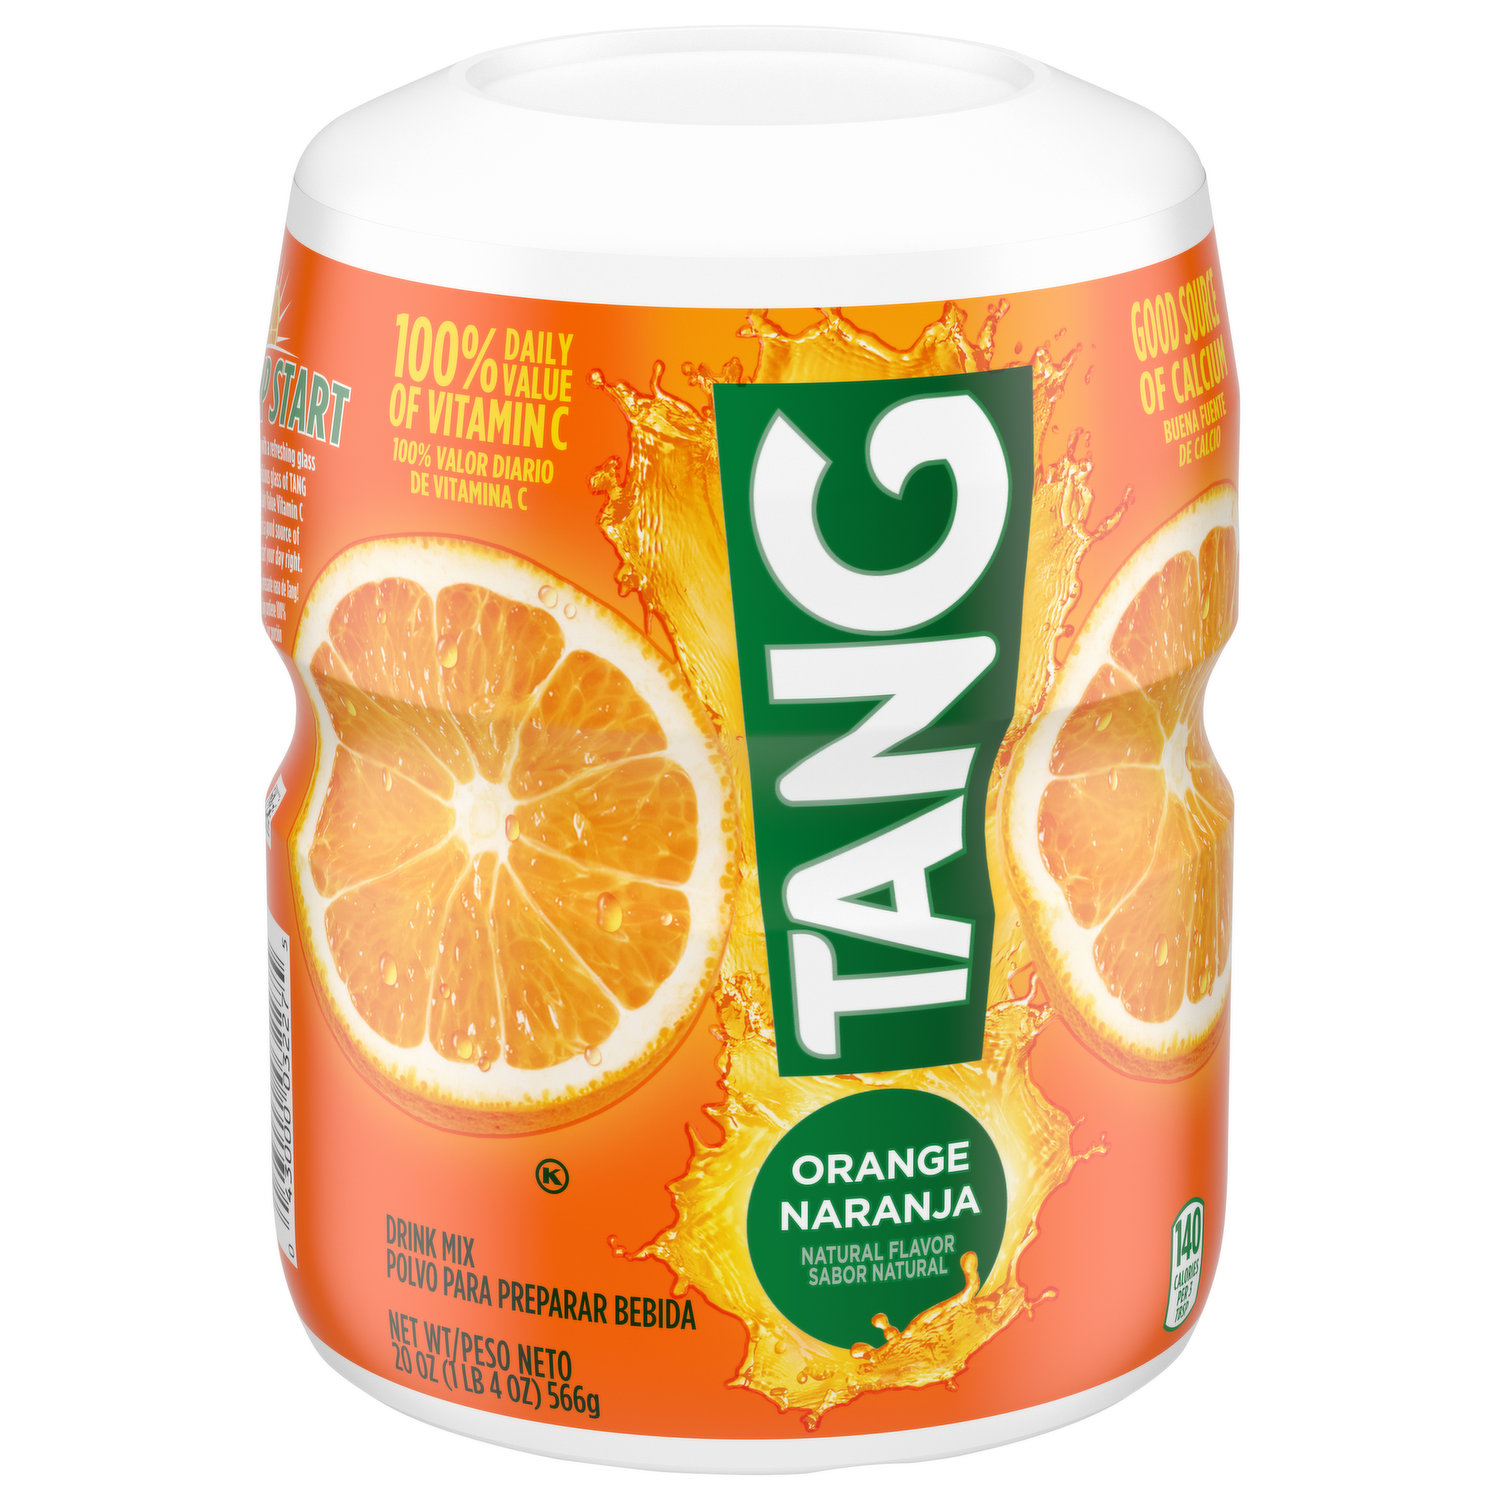 Tang drink mix orange